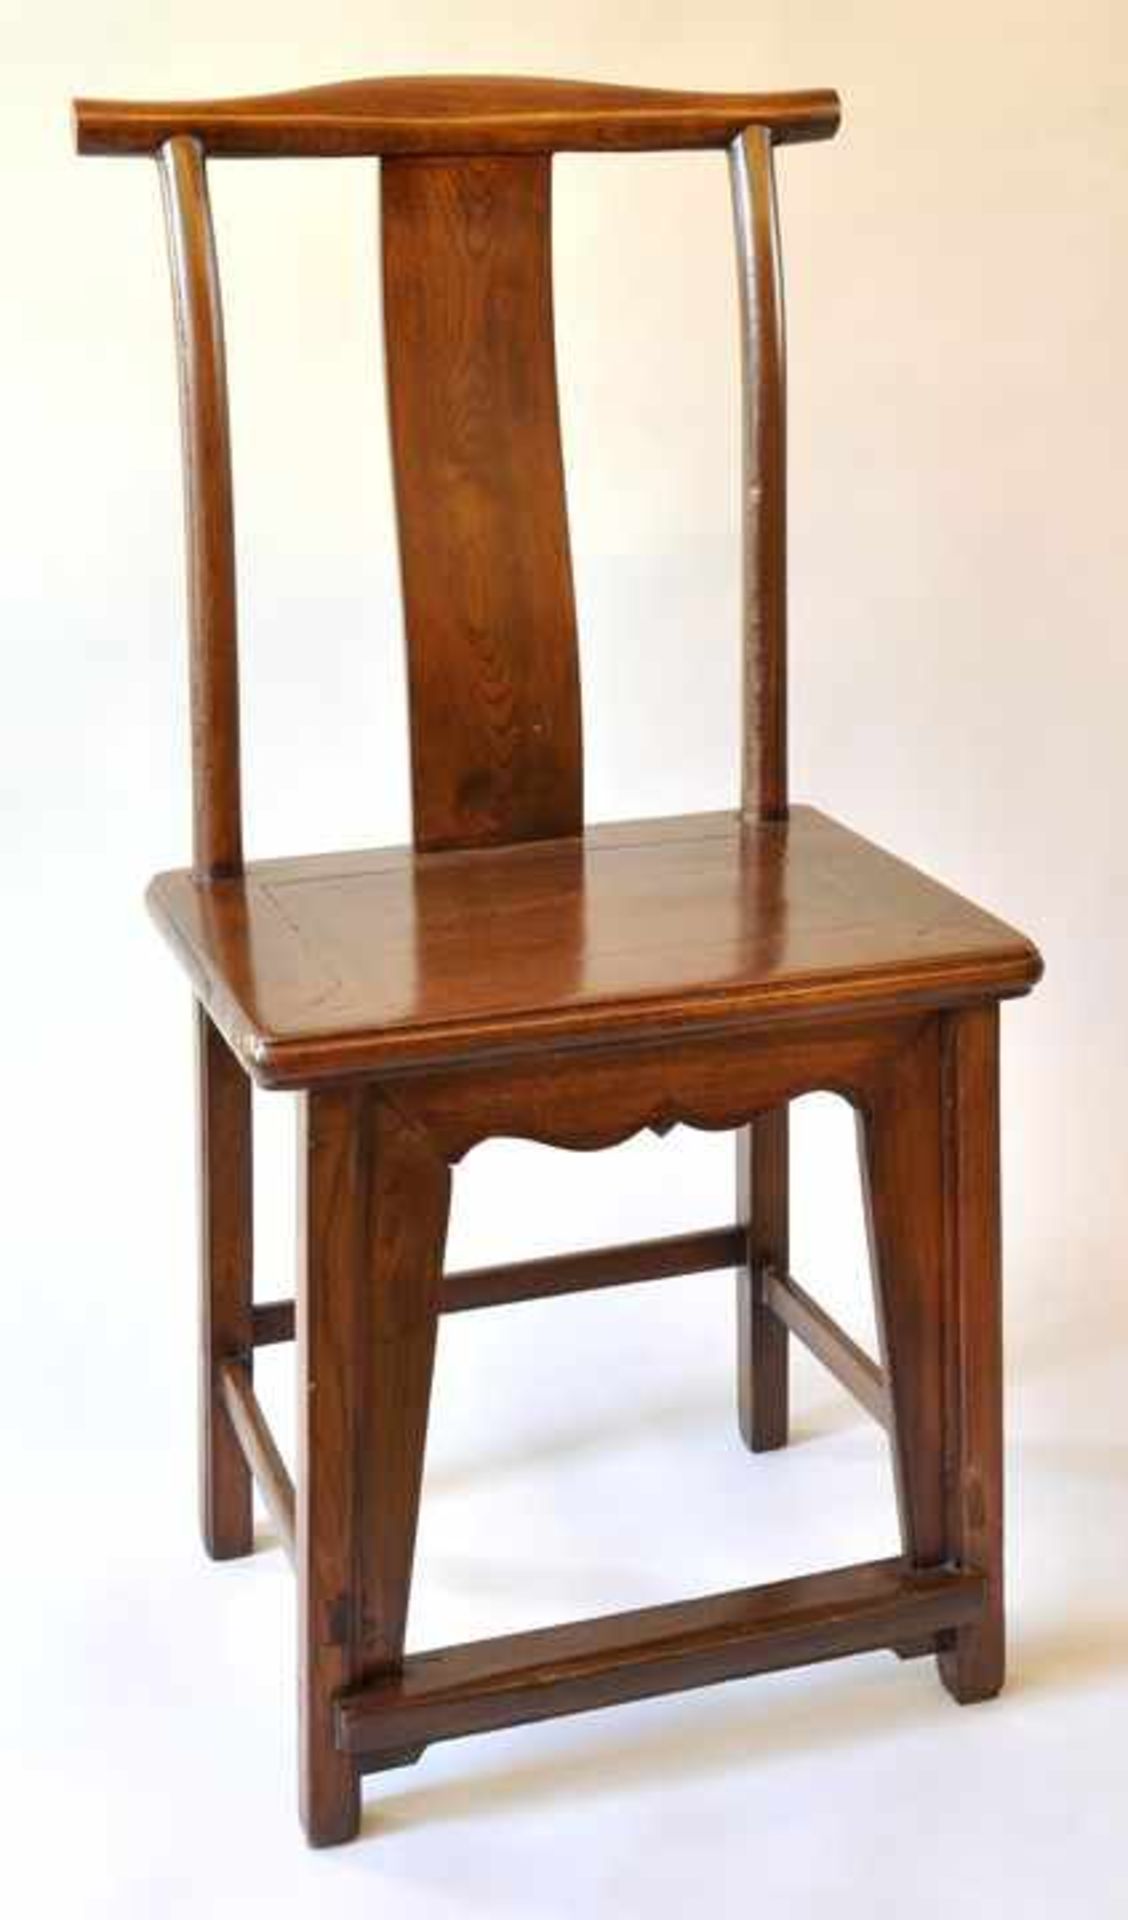 Stuhl, China, Laubholz, hellbraun, geschweifte Rückenlehne,H: 104 cm - Bild 2 aus 2